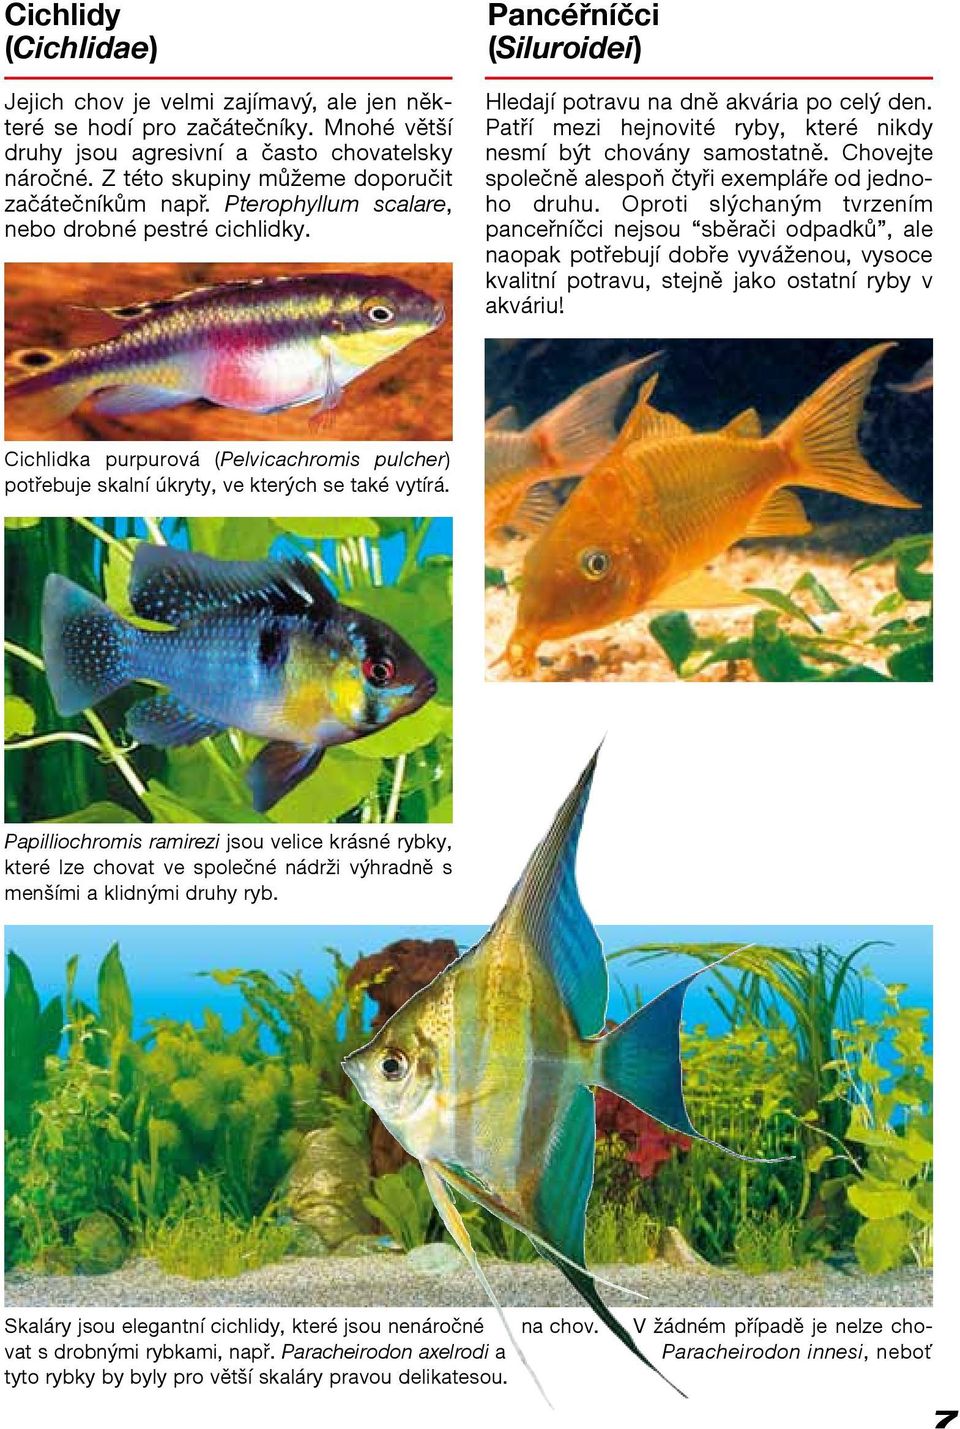 Patří mezi hejnovité ryby, které nikdy nesmí být chovány samostatně. Chovejte společně alespoň čtyři exempláře od jednoho druhu.